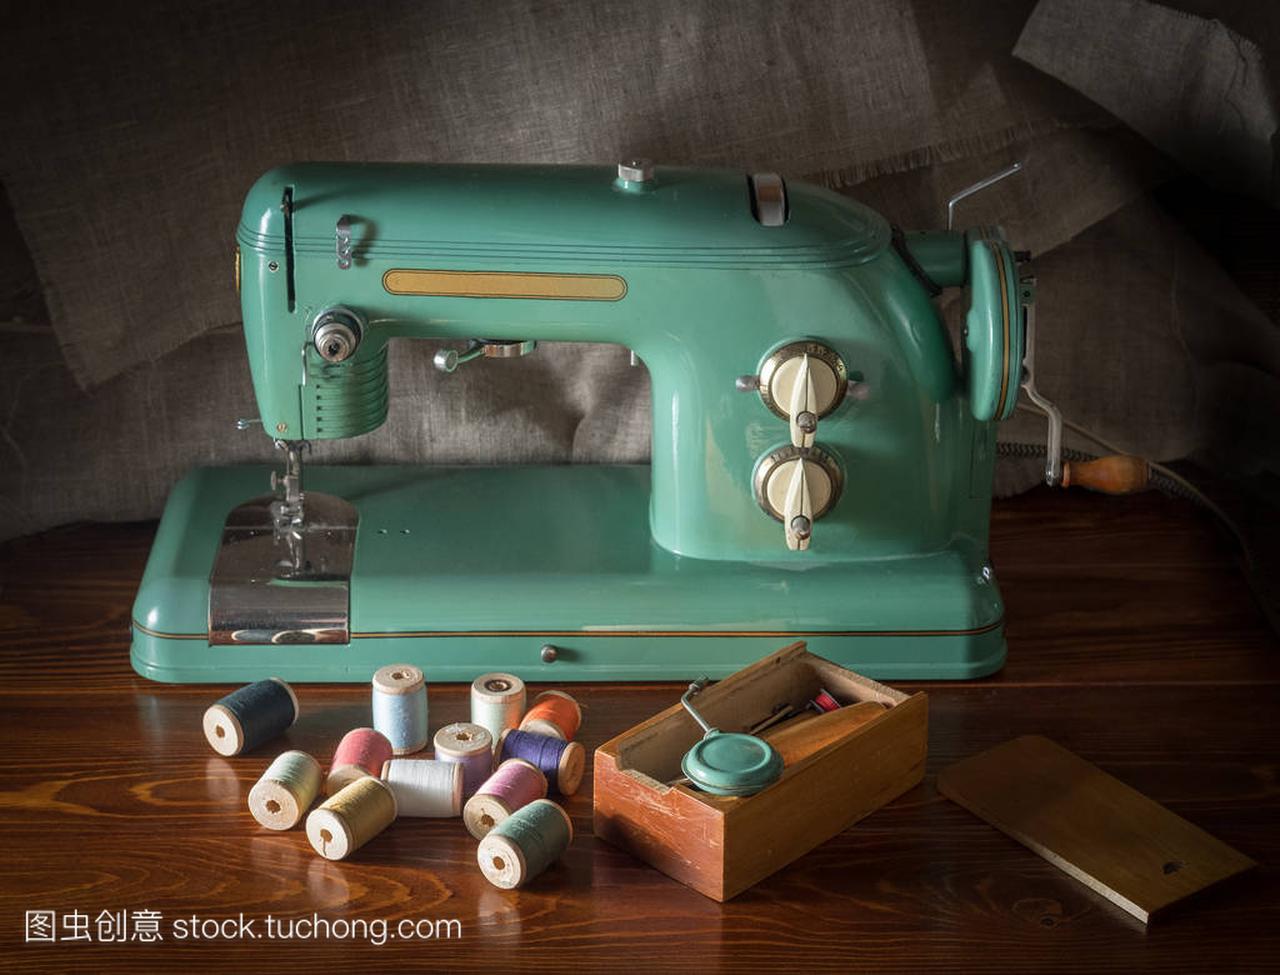 一台旧的电动缝纫机, 带有工具的盒子和洒有螺